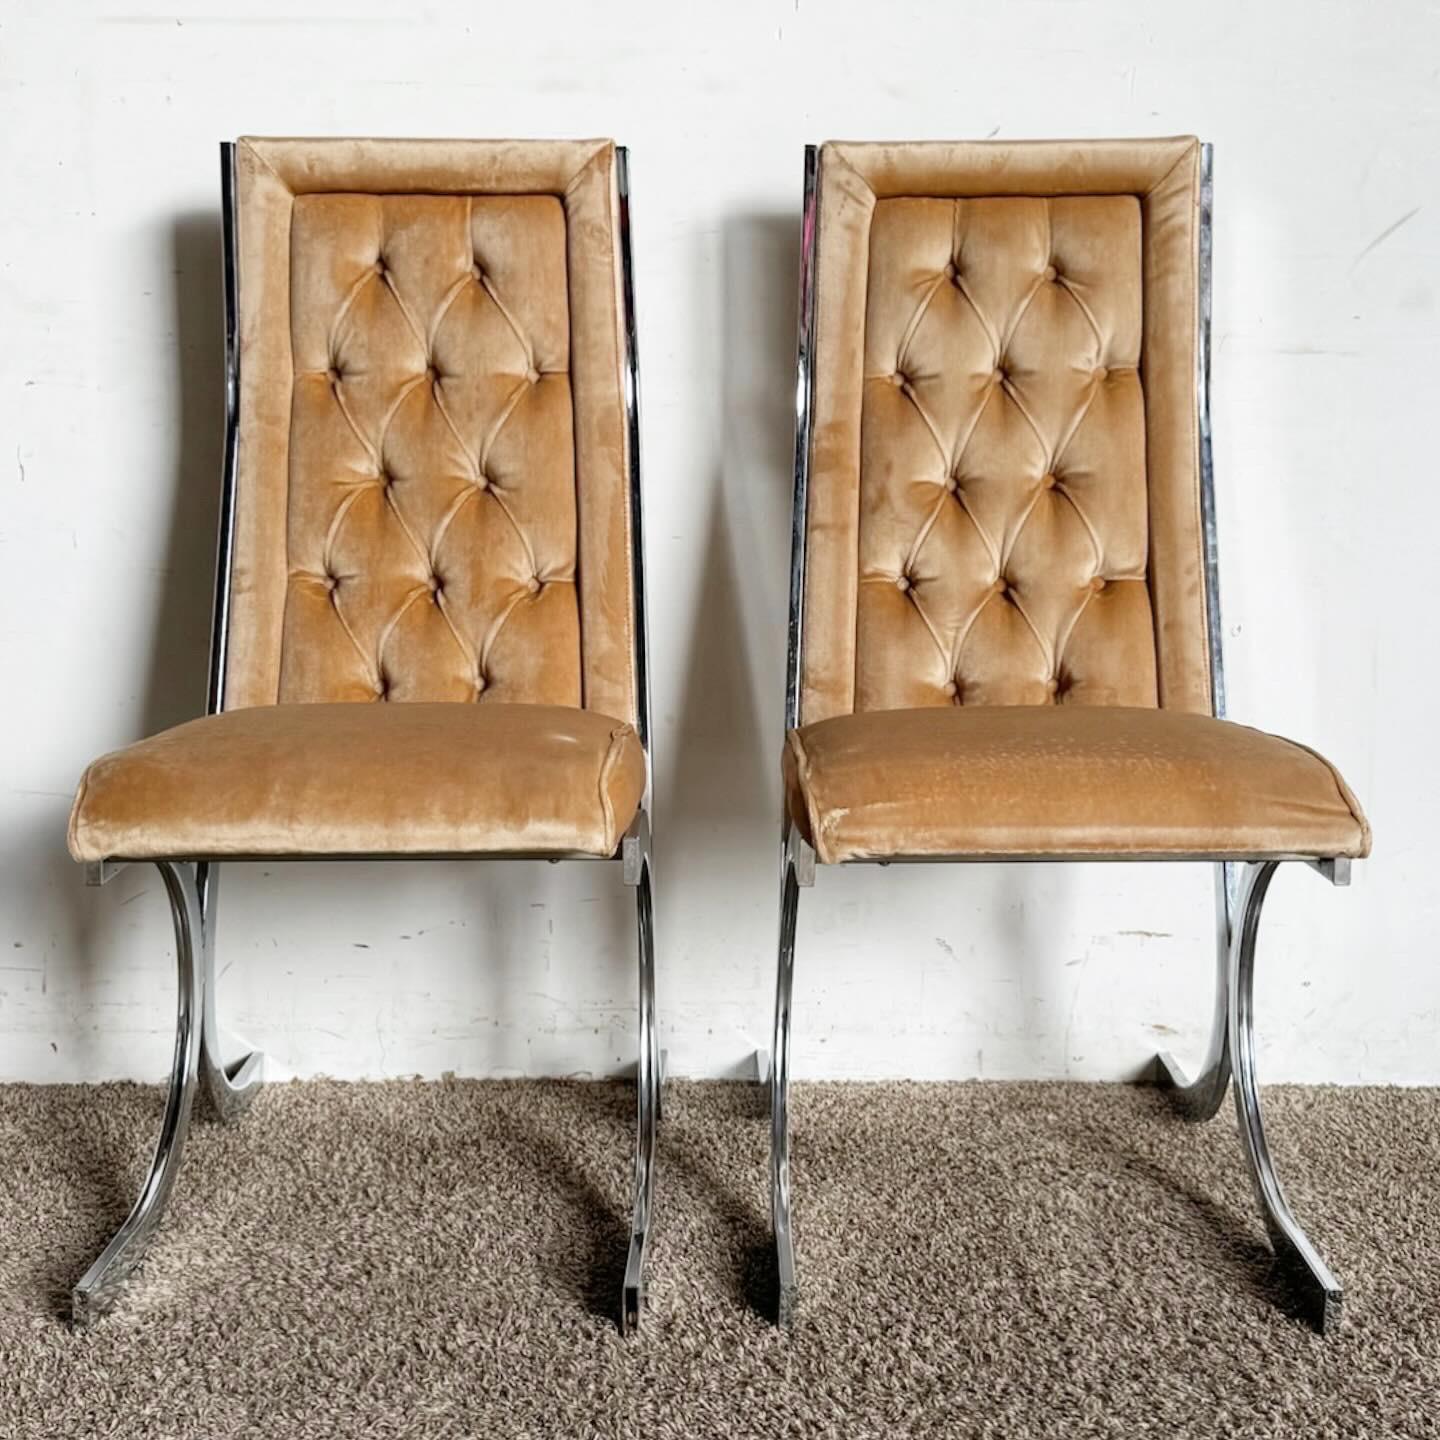 Les chaises de salle à manger chromées en tissu touffeté, un ensemble de six, allient le charme rétro au confort moderne. Dotées d'une structure chromée élégante et d'un tissu tufté, ces chaises sont parfaites pour des repas élégants. Idéales pour